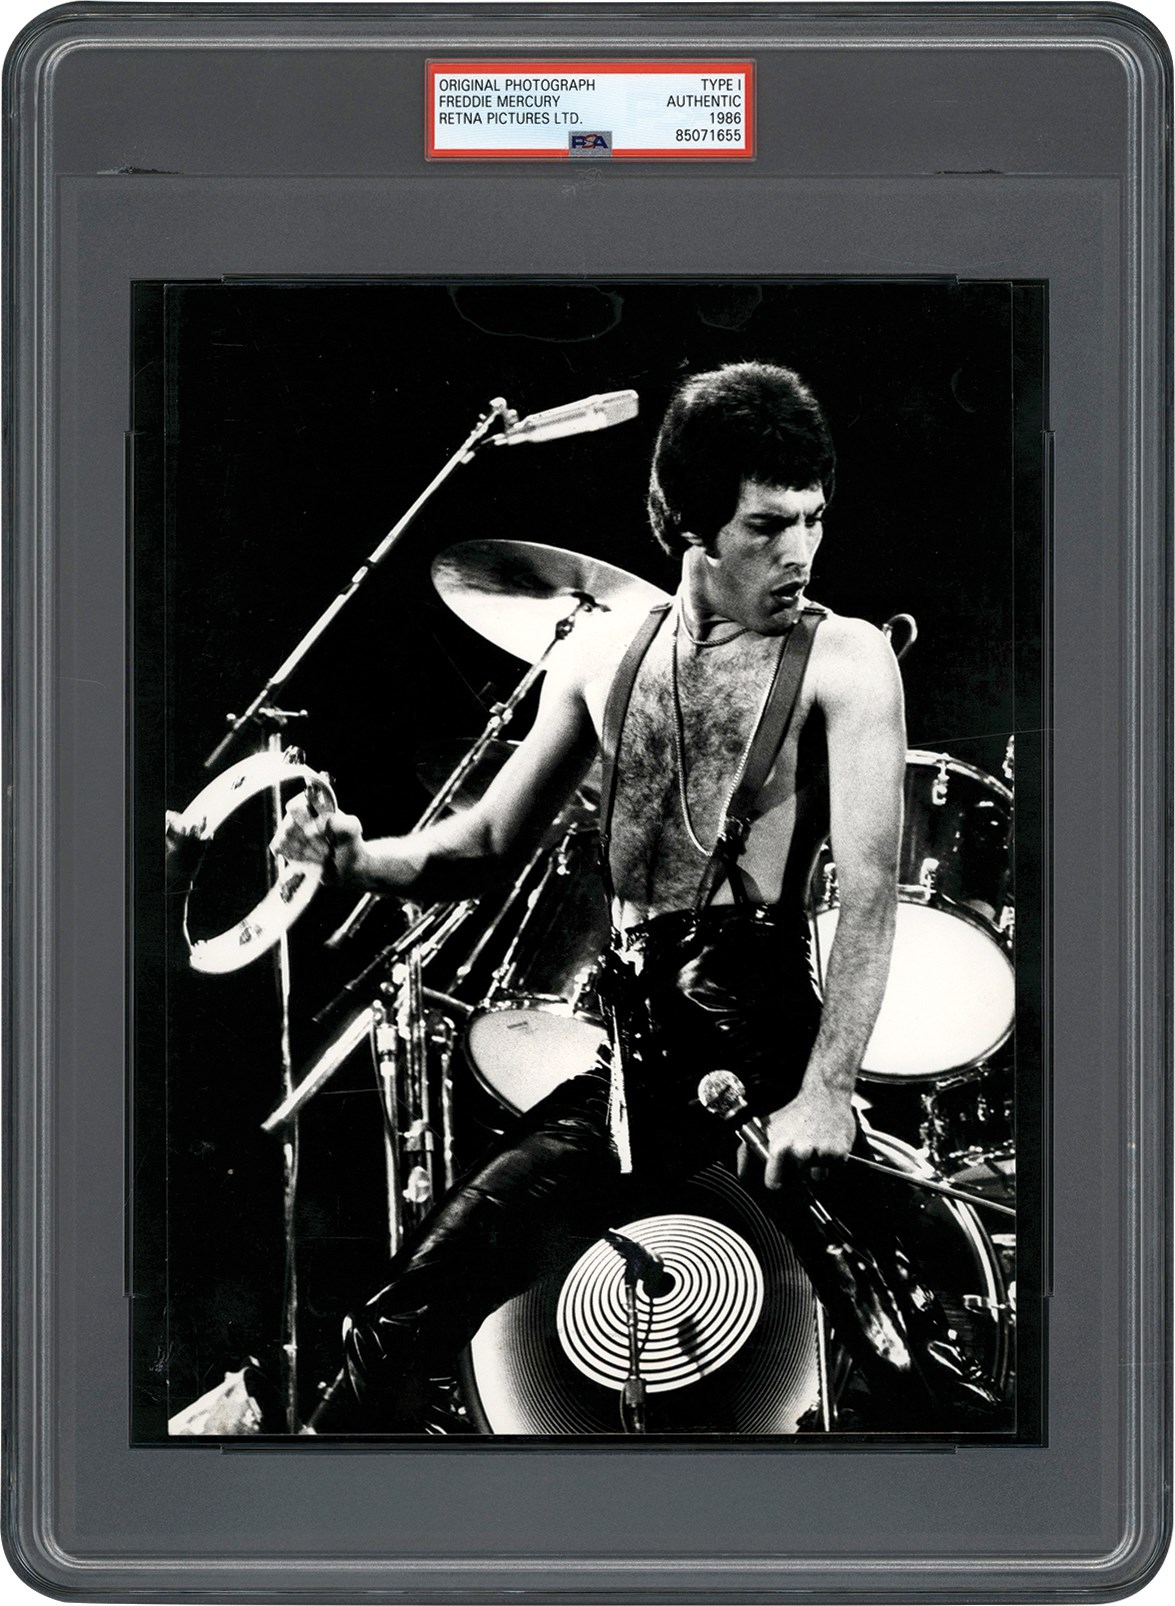 - 1986 Freddie Mercury "Queen" Original Photograph (PSA Type I)